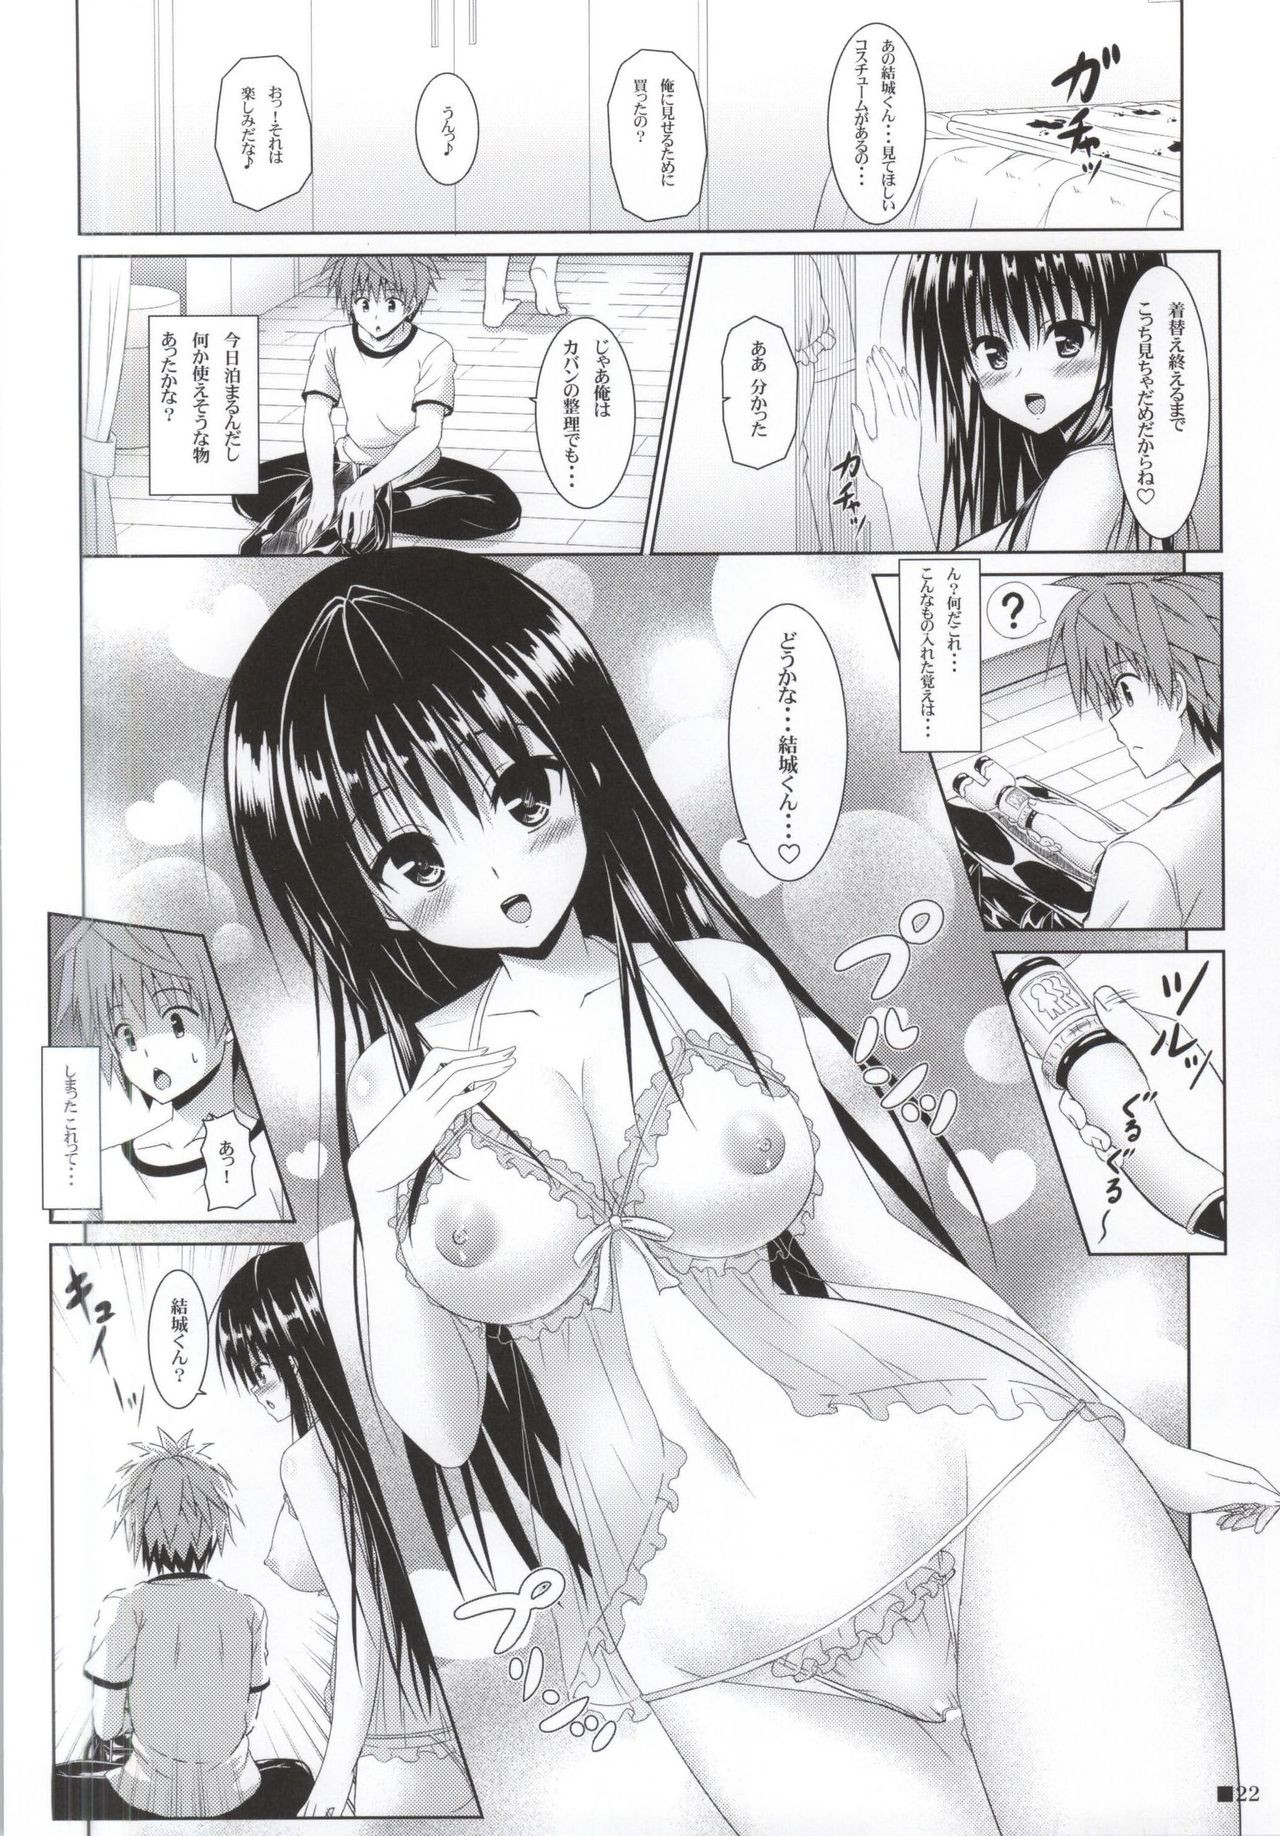 Yui-chan to Issho 3 hentai manga picture 21